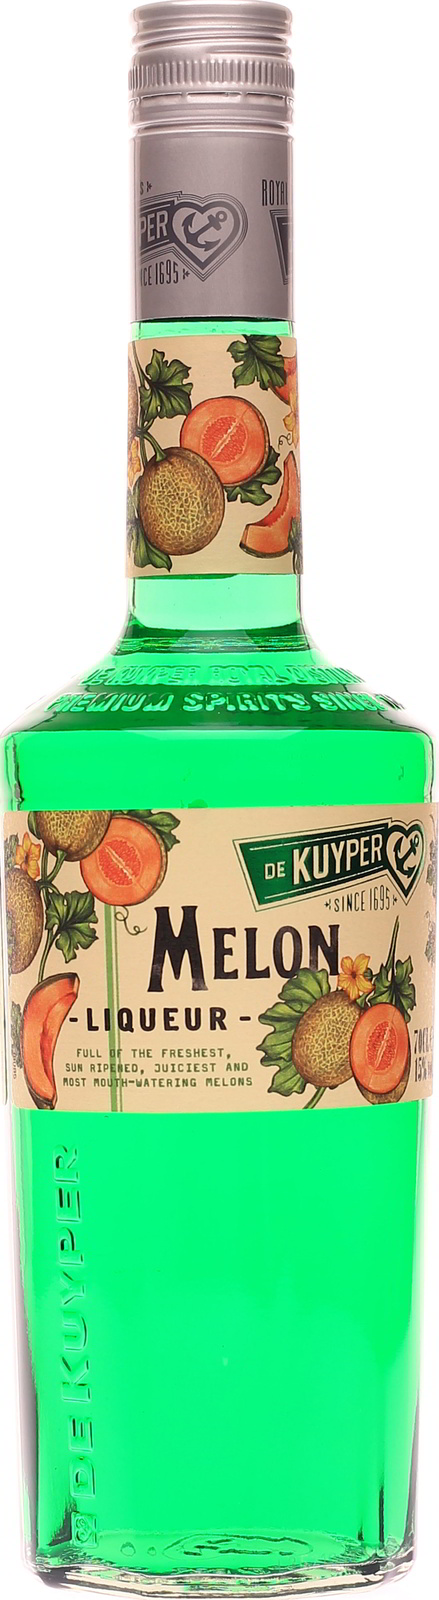 Melonenlikör Melon, günstig im De Shop Kuyper